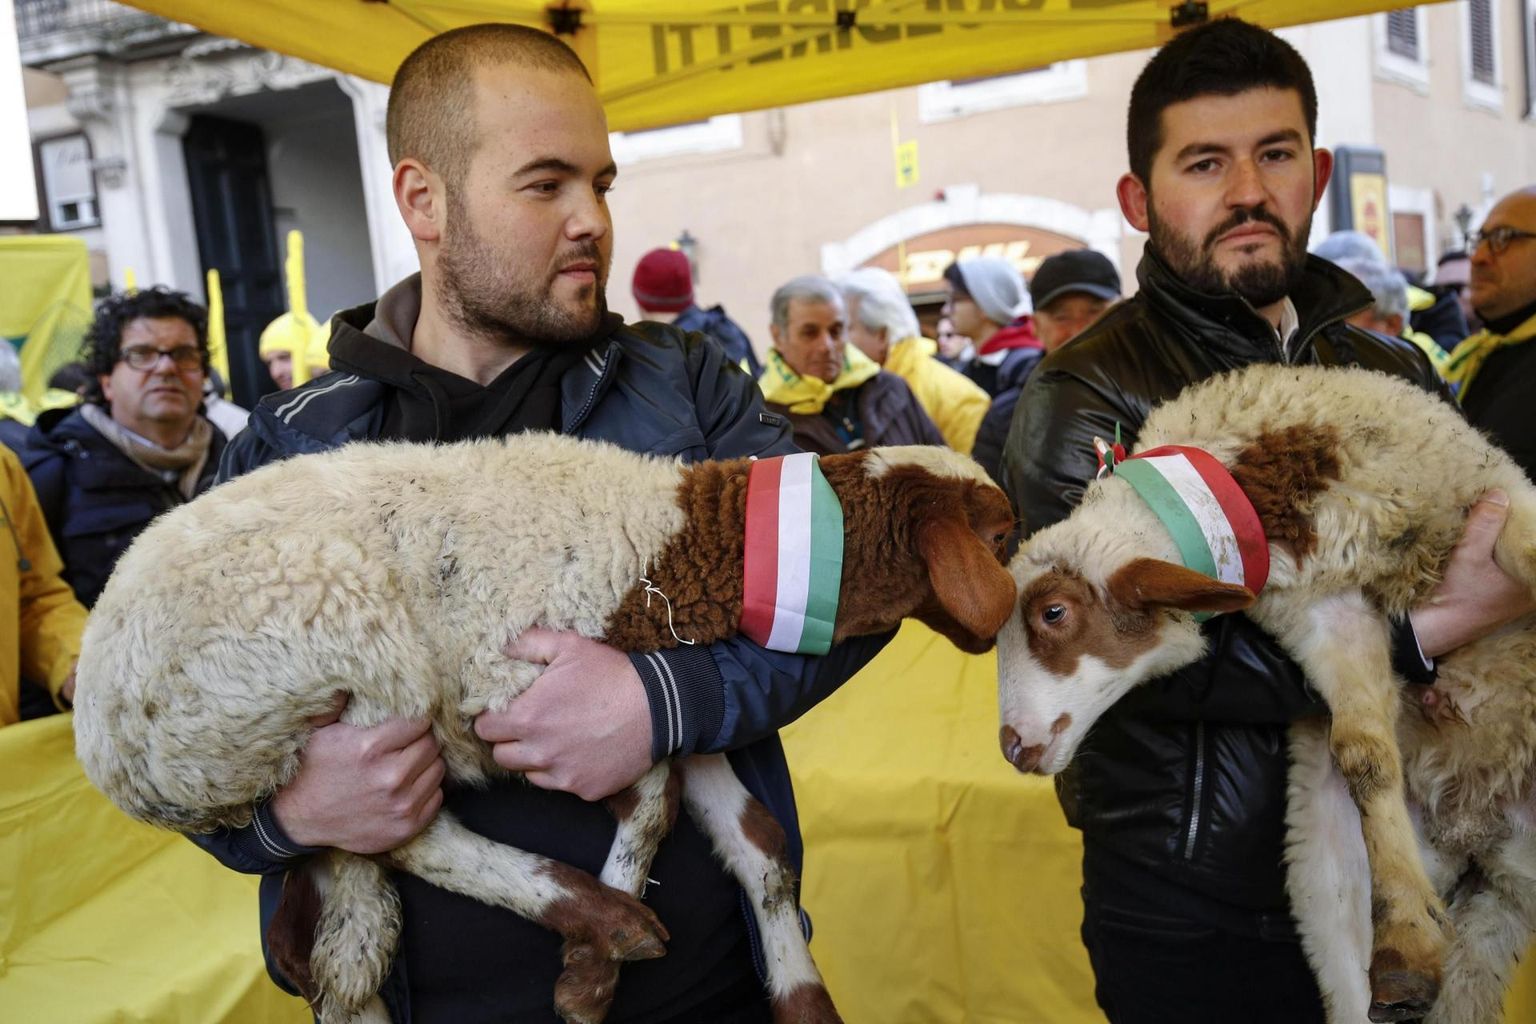 Itaalia põllumeeste ühing Coldiretti on häälekas omamaiste talupidajate hüvede eest võitjeja. Veebruaris korraldatud protestimiitingul nõudsid nad impordipiiranguid lambalihale, nüüd korraldasid Eestissegi ulatunud kampaania. FOTO: Giuseppe Lami/Epa/Scanpix